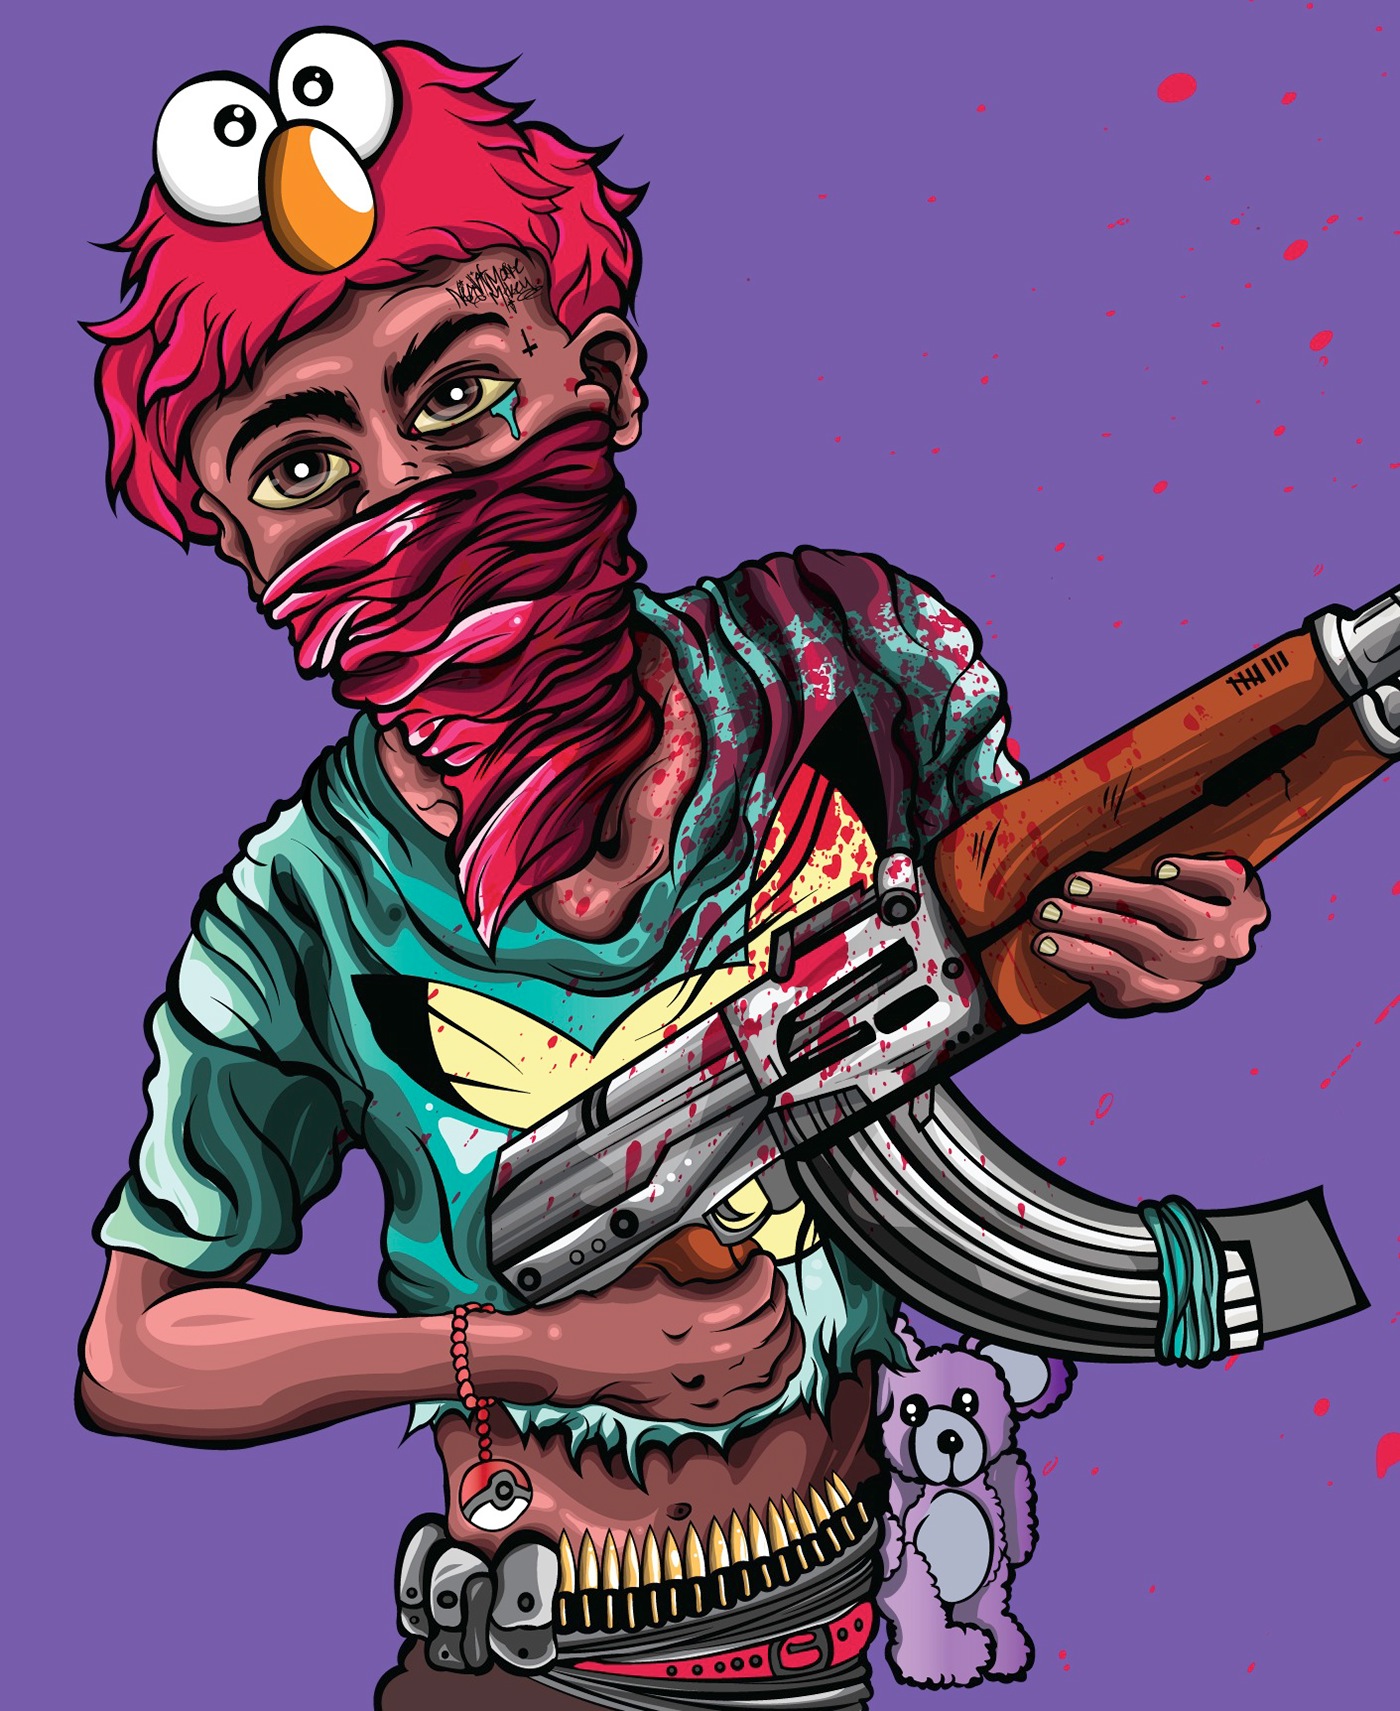 Adobe Portfolio vectorart vector soldier child kids guns conflict Global crisis nightmaremikey